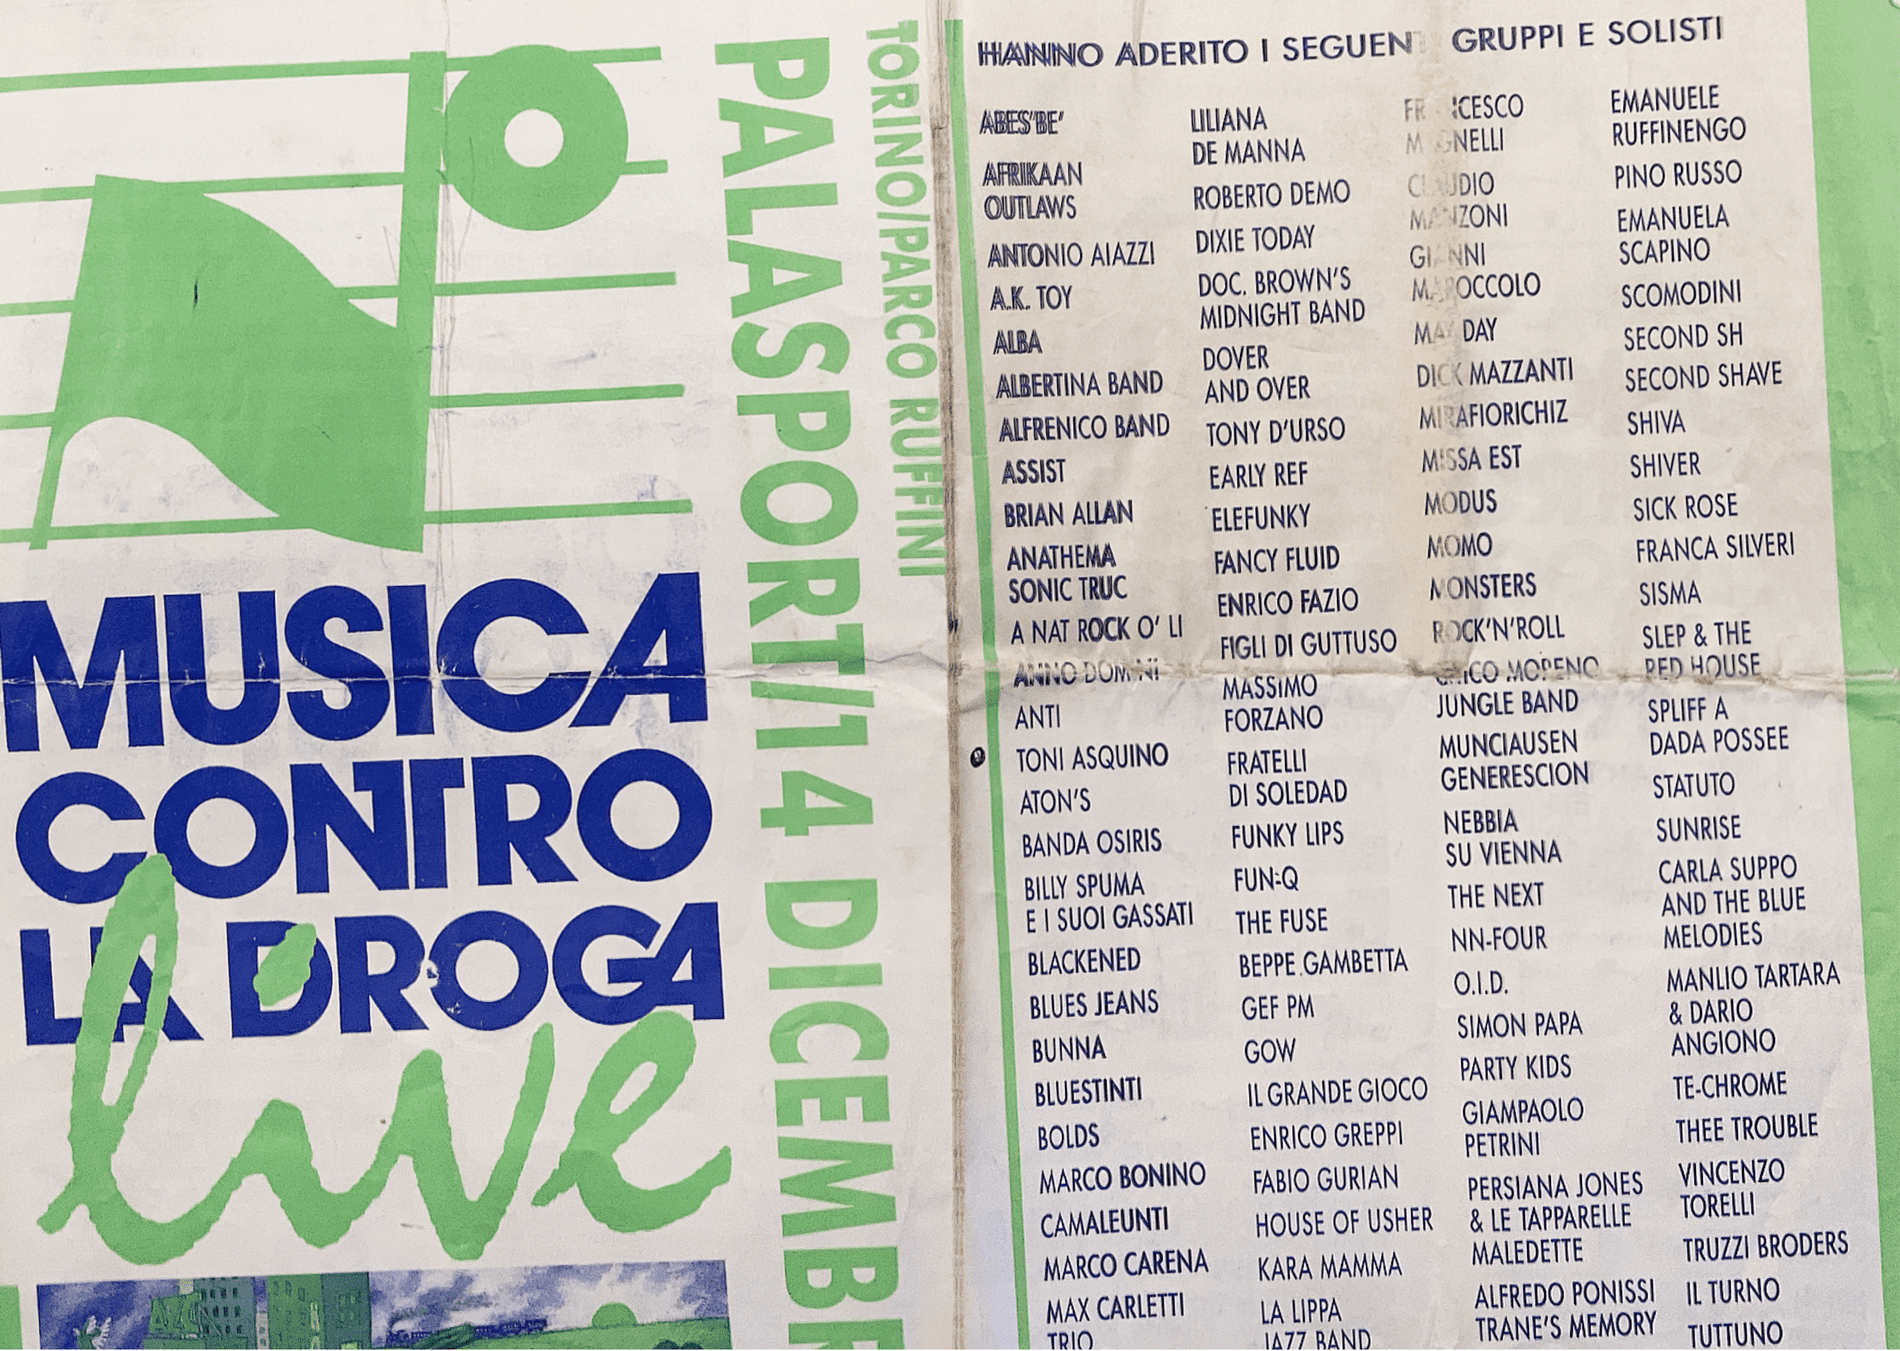 1991 - Locandina evento "Musica contro la droga"